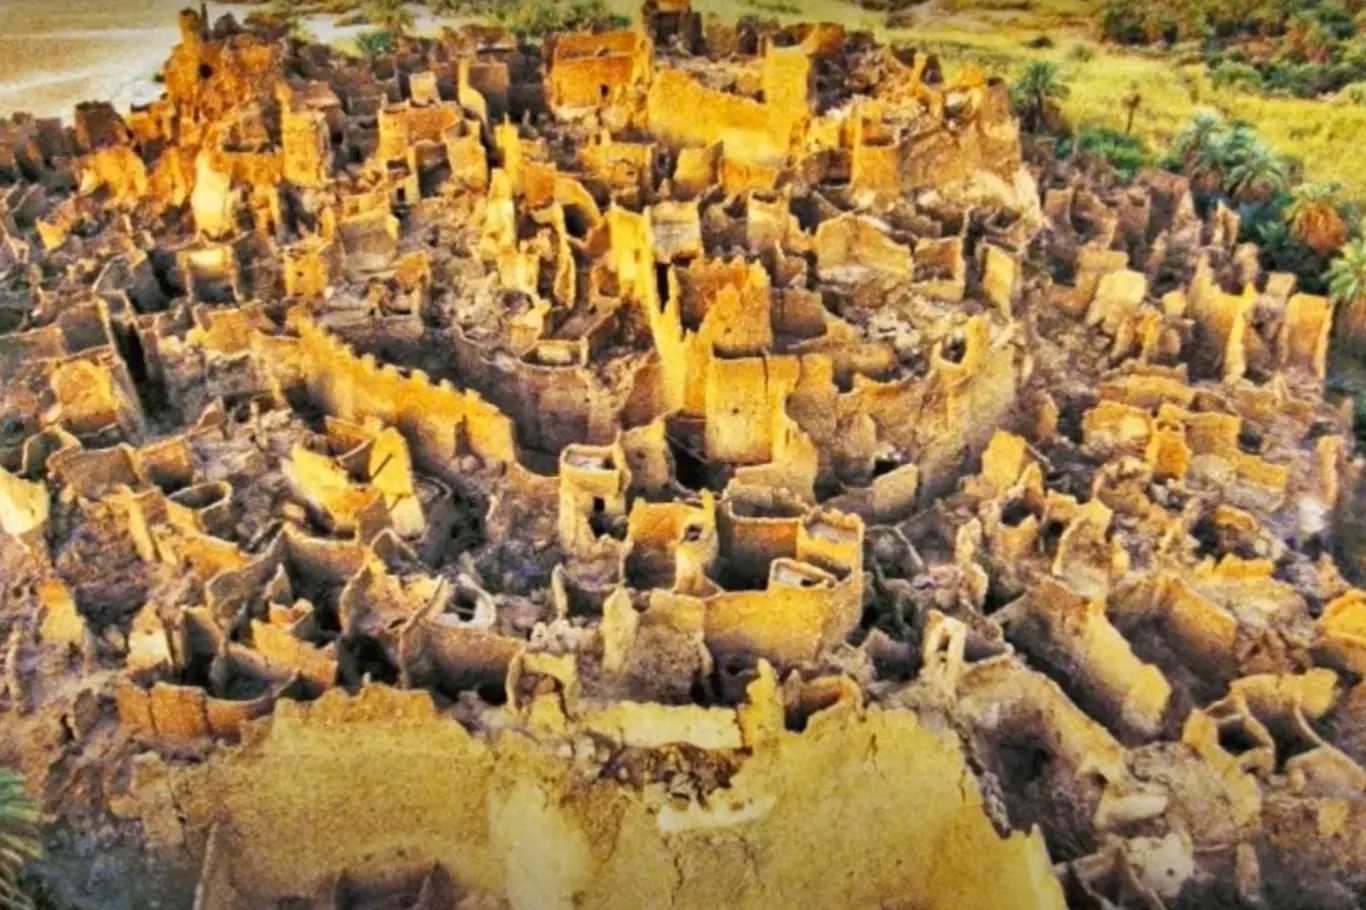 Garamantové postavili za dobu své existence asi tři impozantní města.